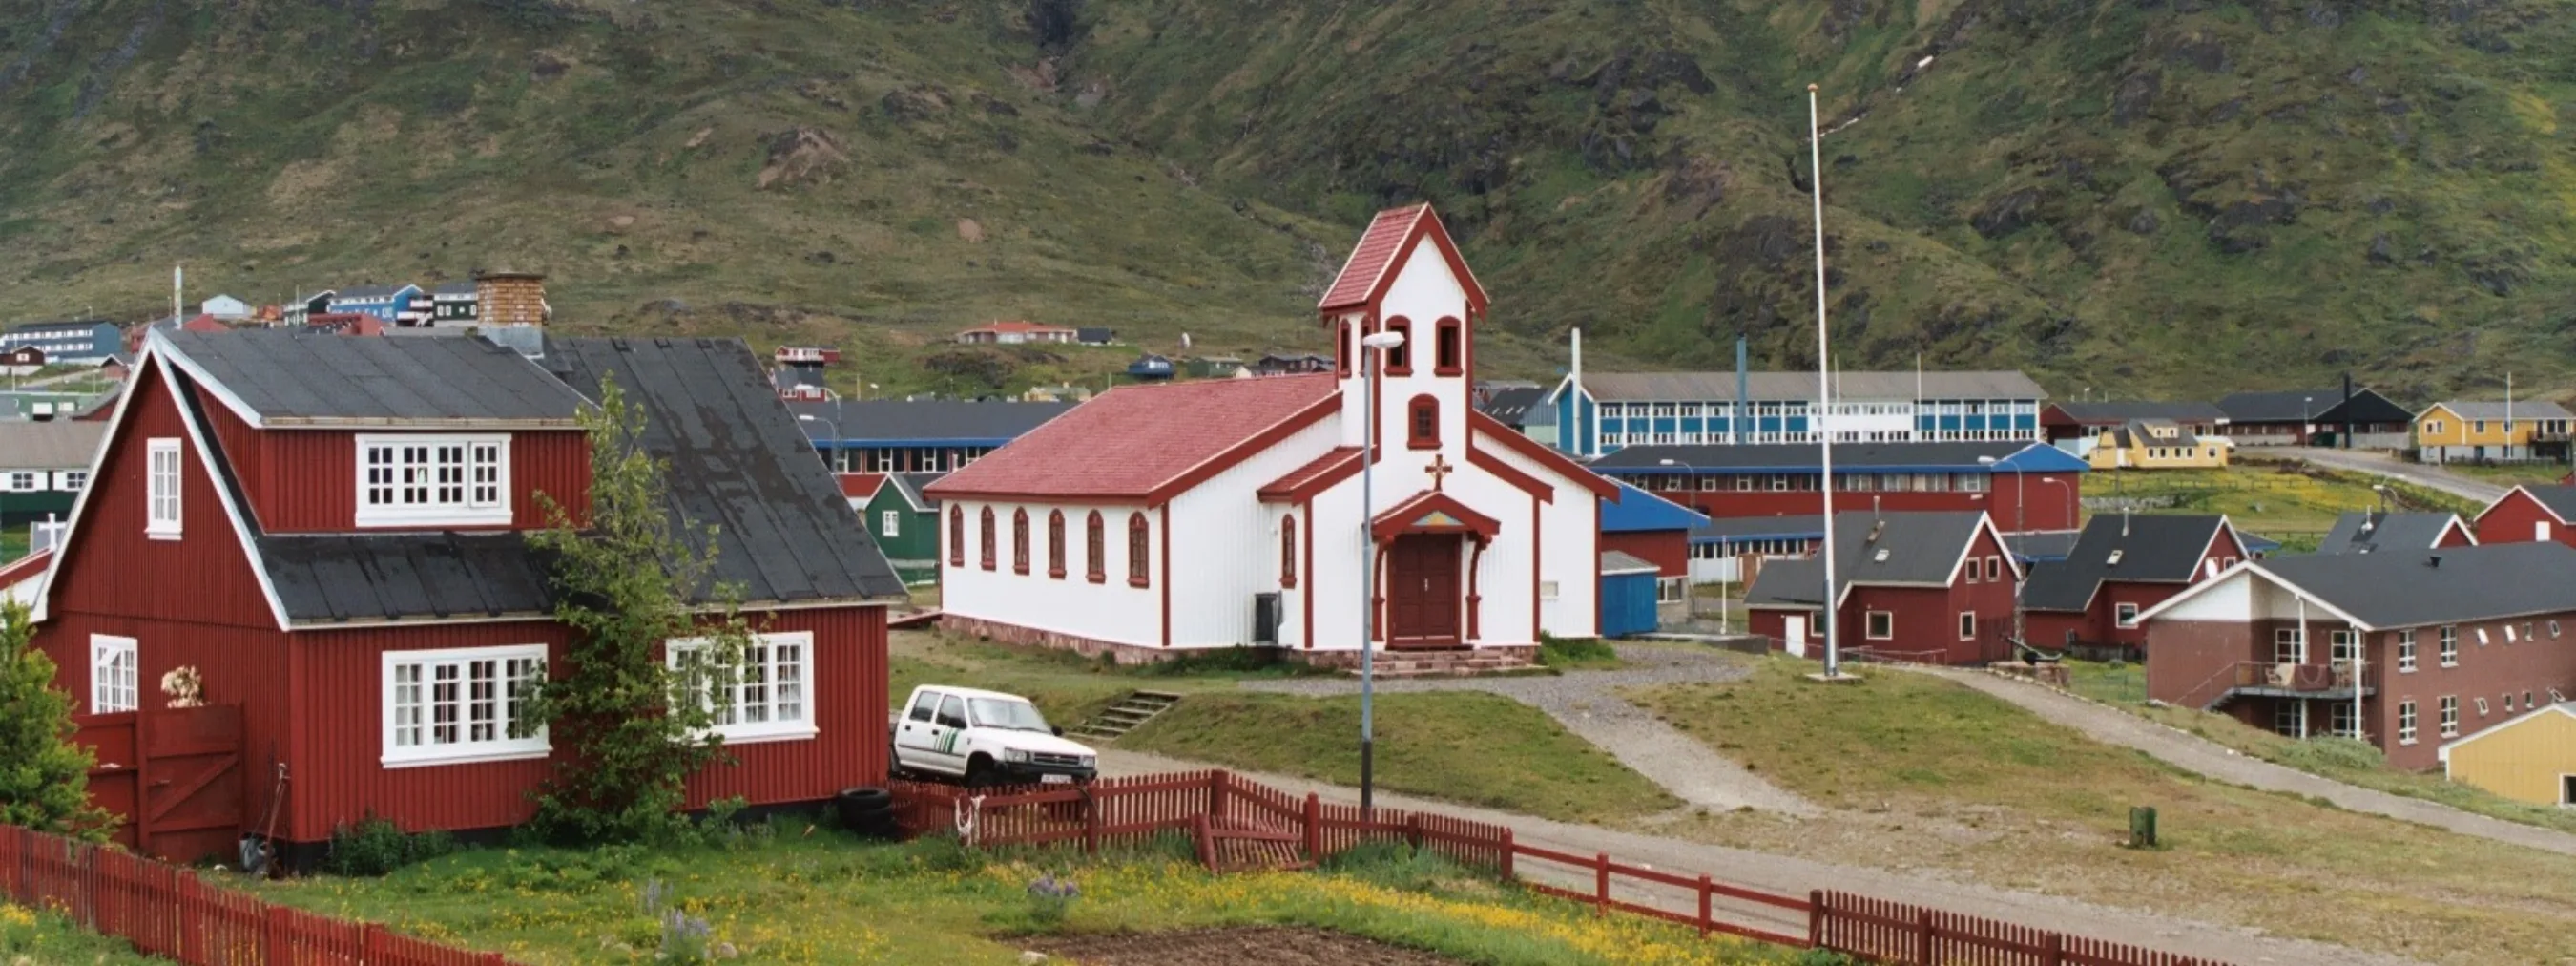 Südgrönland: Siedlung Narsaq
Häuser und Kirche vor Bergen mit Nebel